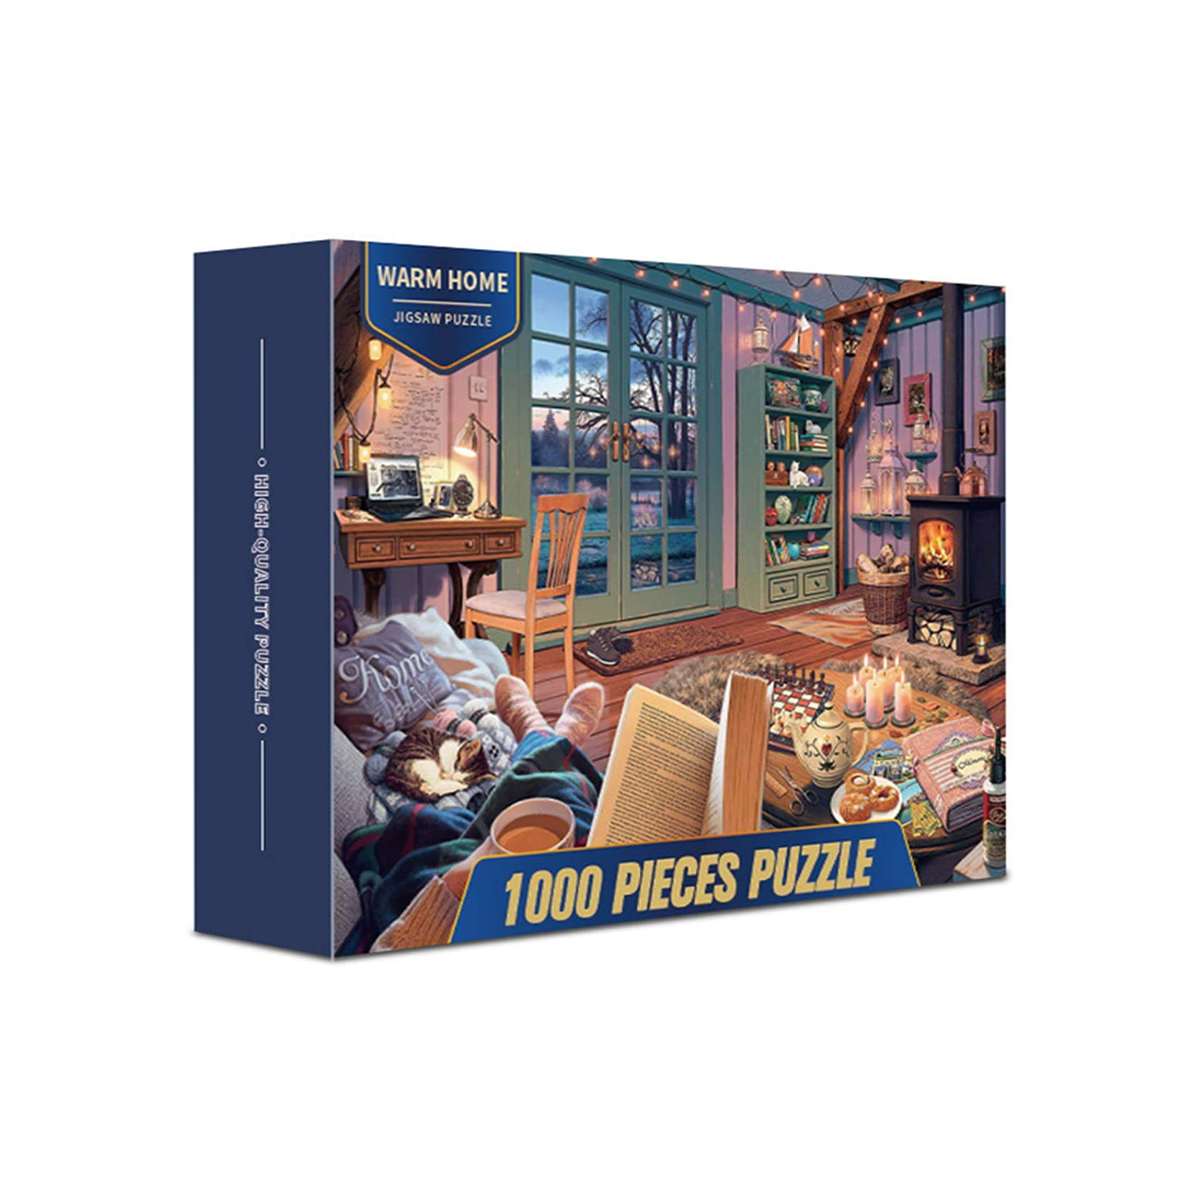 Puzzle Cabaña Confortable de 1000 piezas